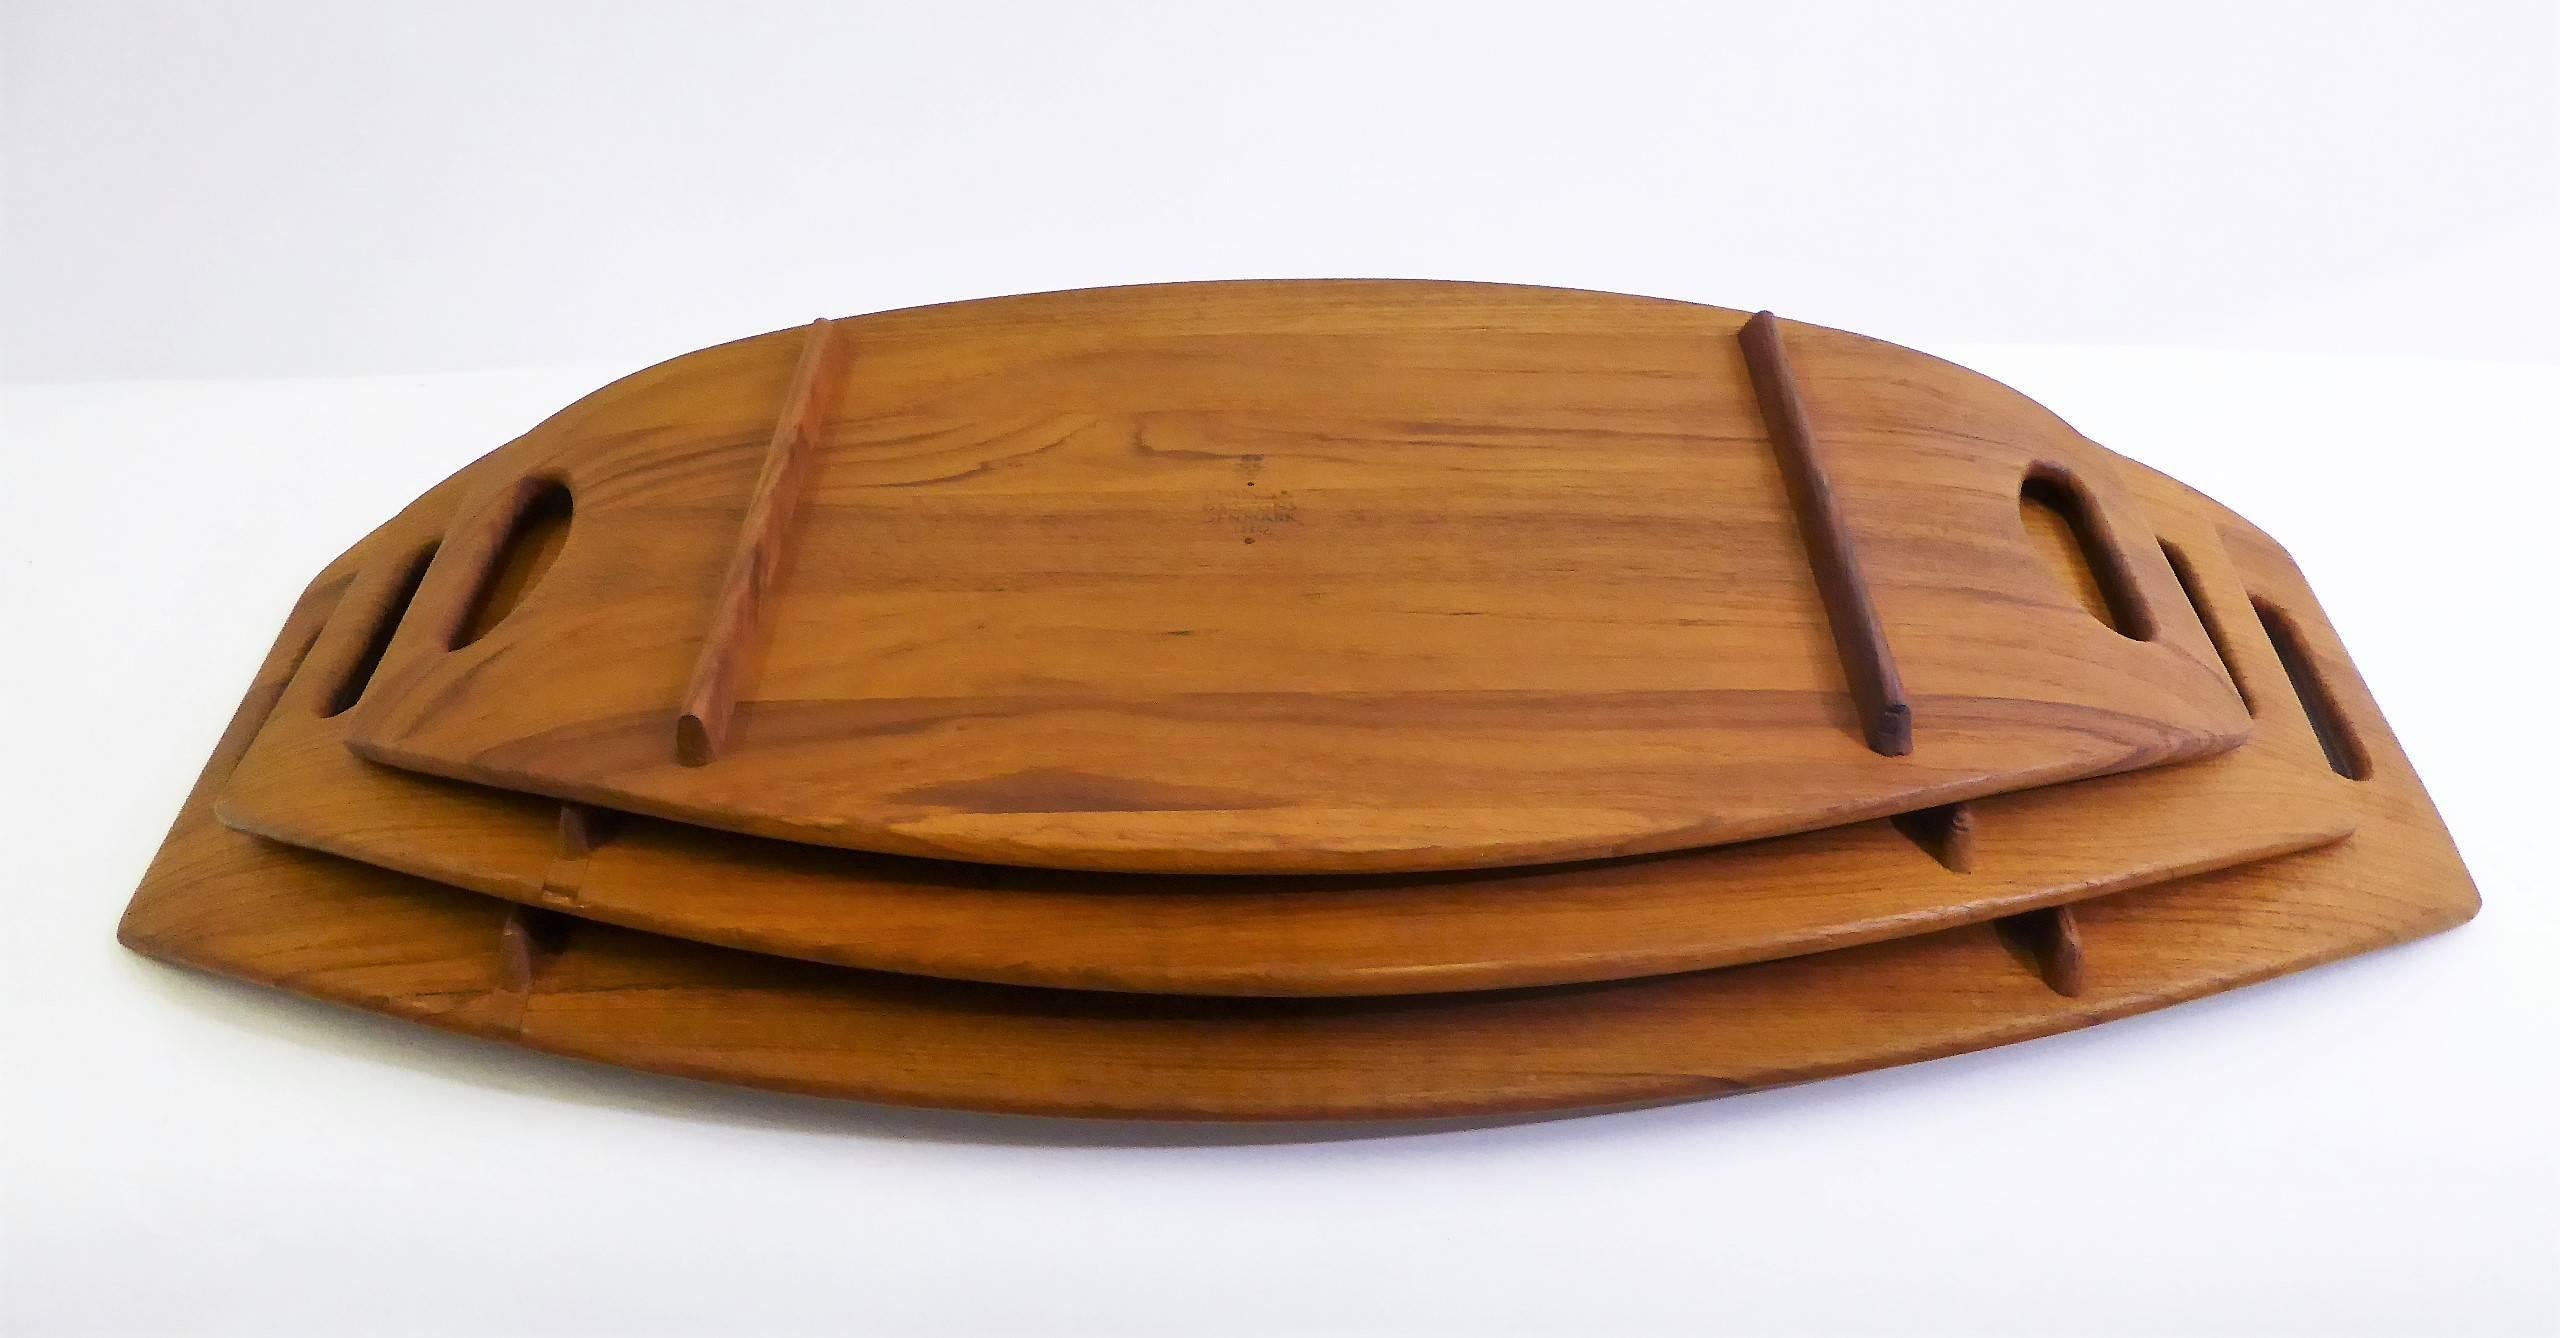 dansk wood tray